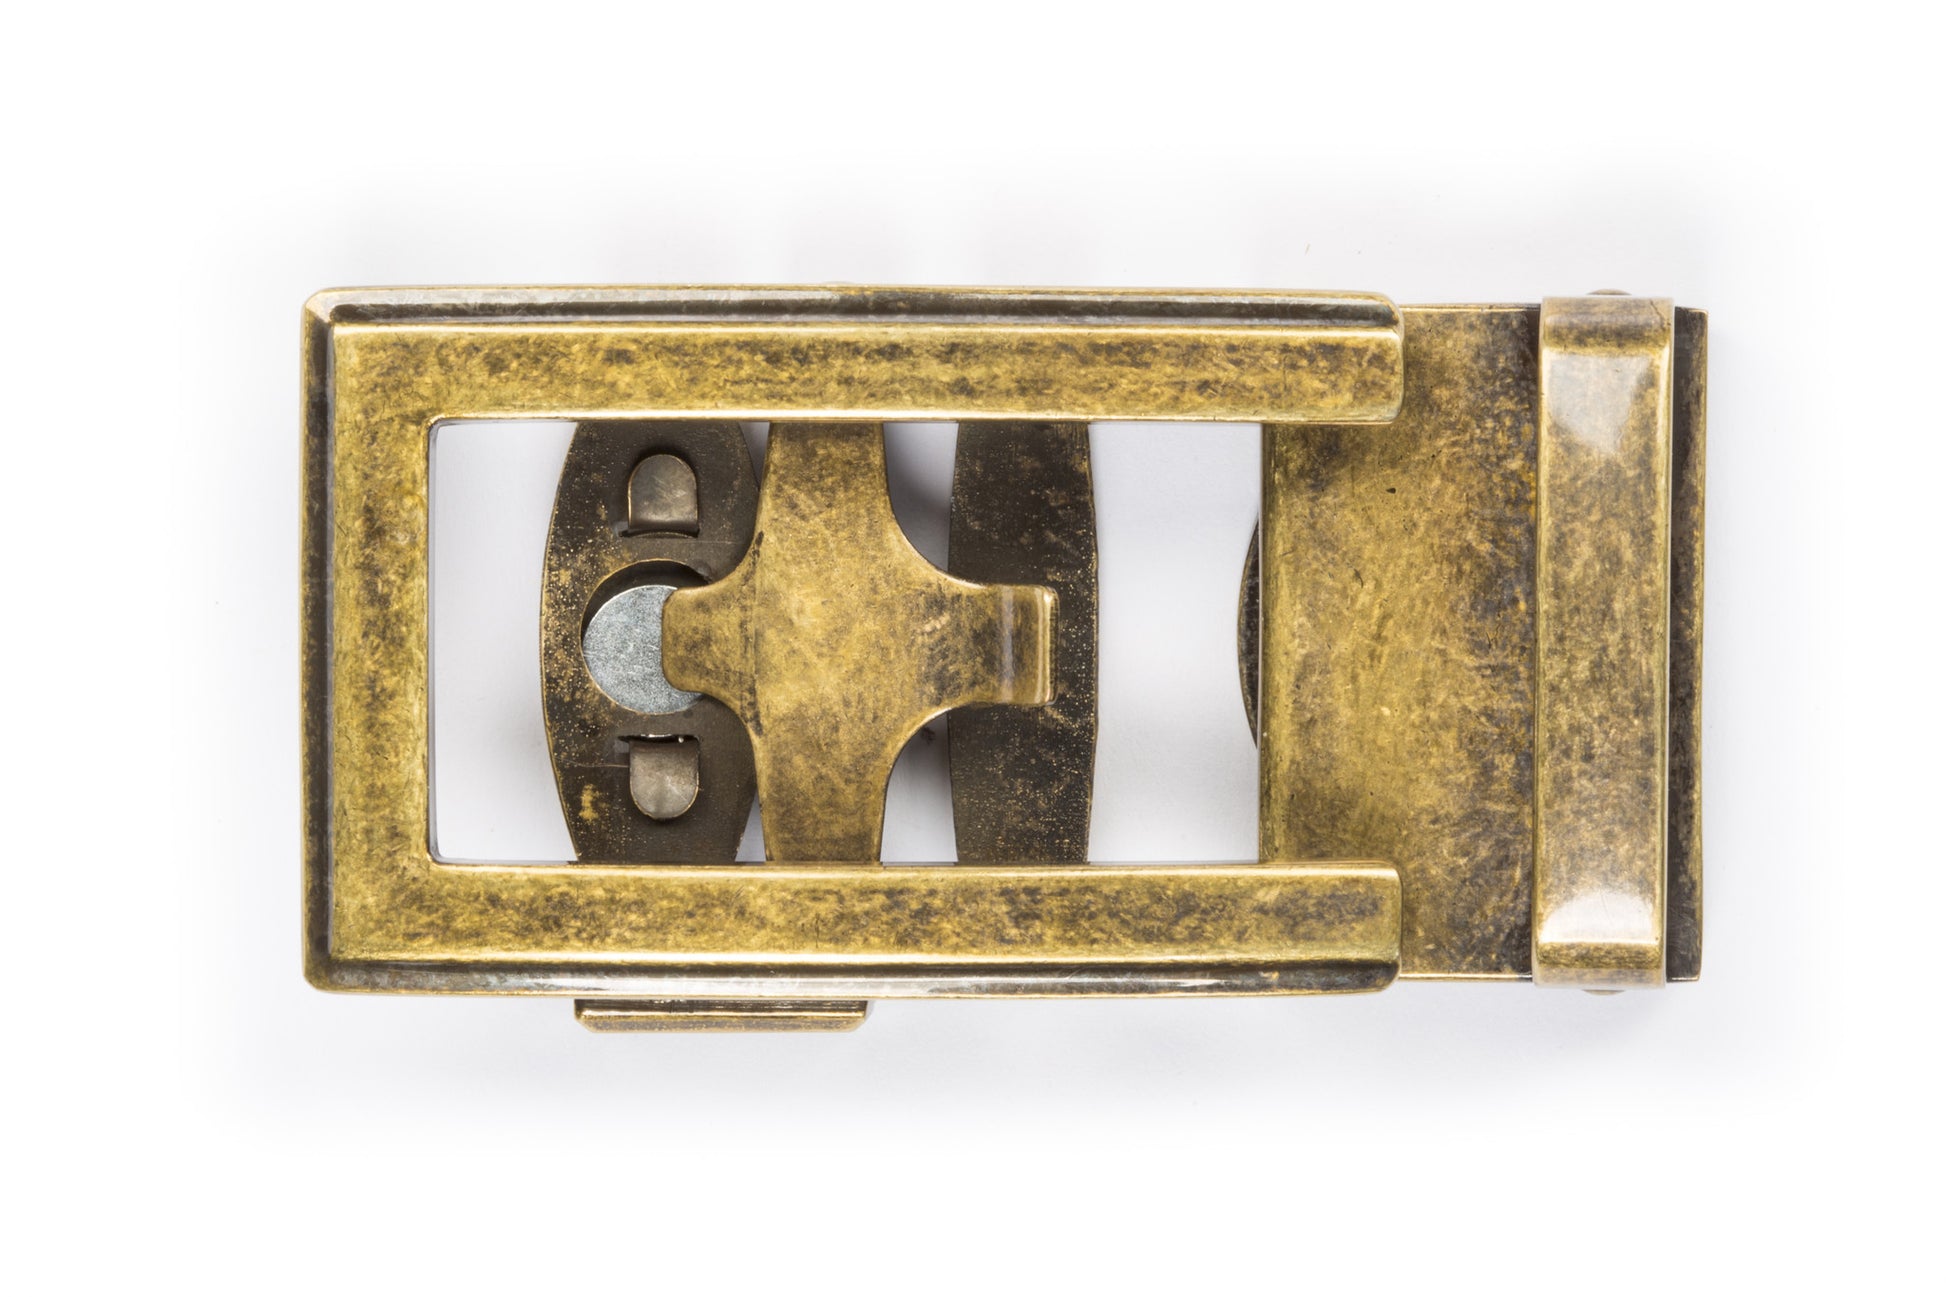 Antique Belt Buckle - 1.5 Replacement Belt Buckle For Men Vintage Gold -  Hanks Belts